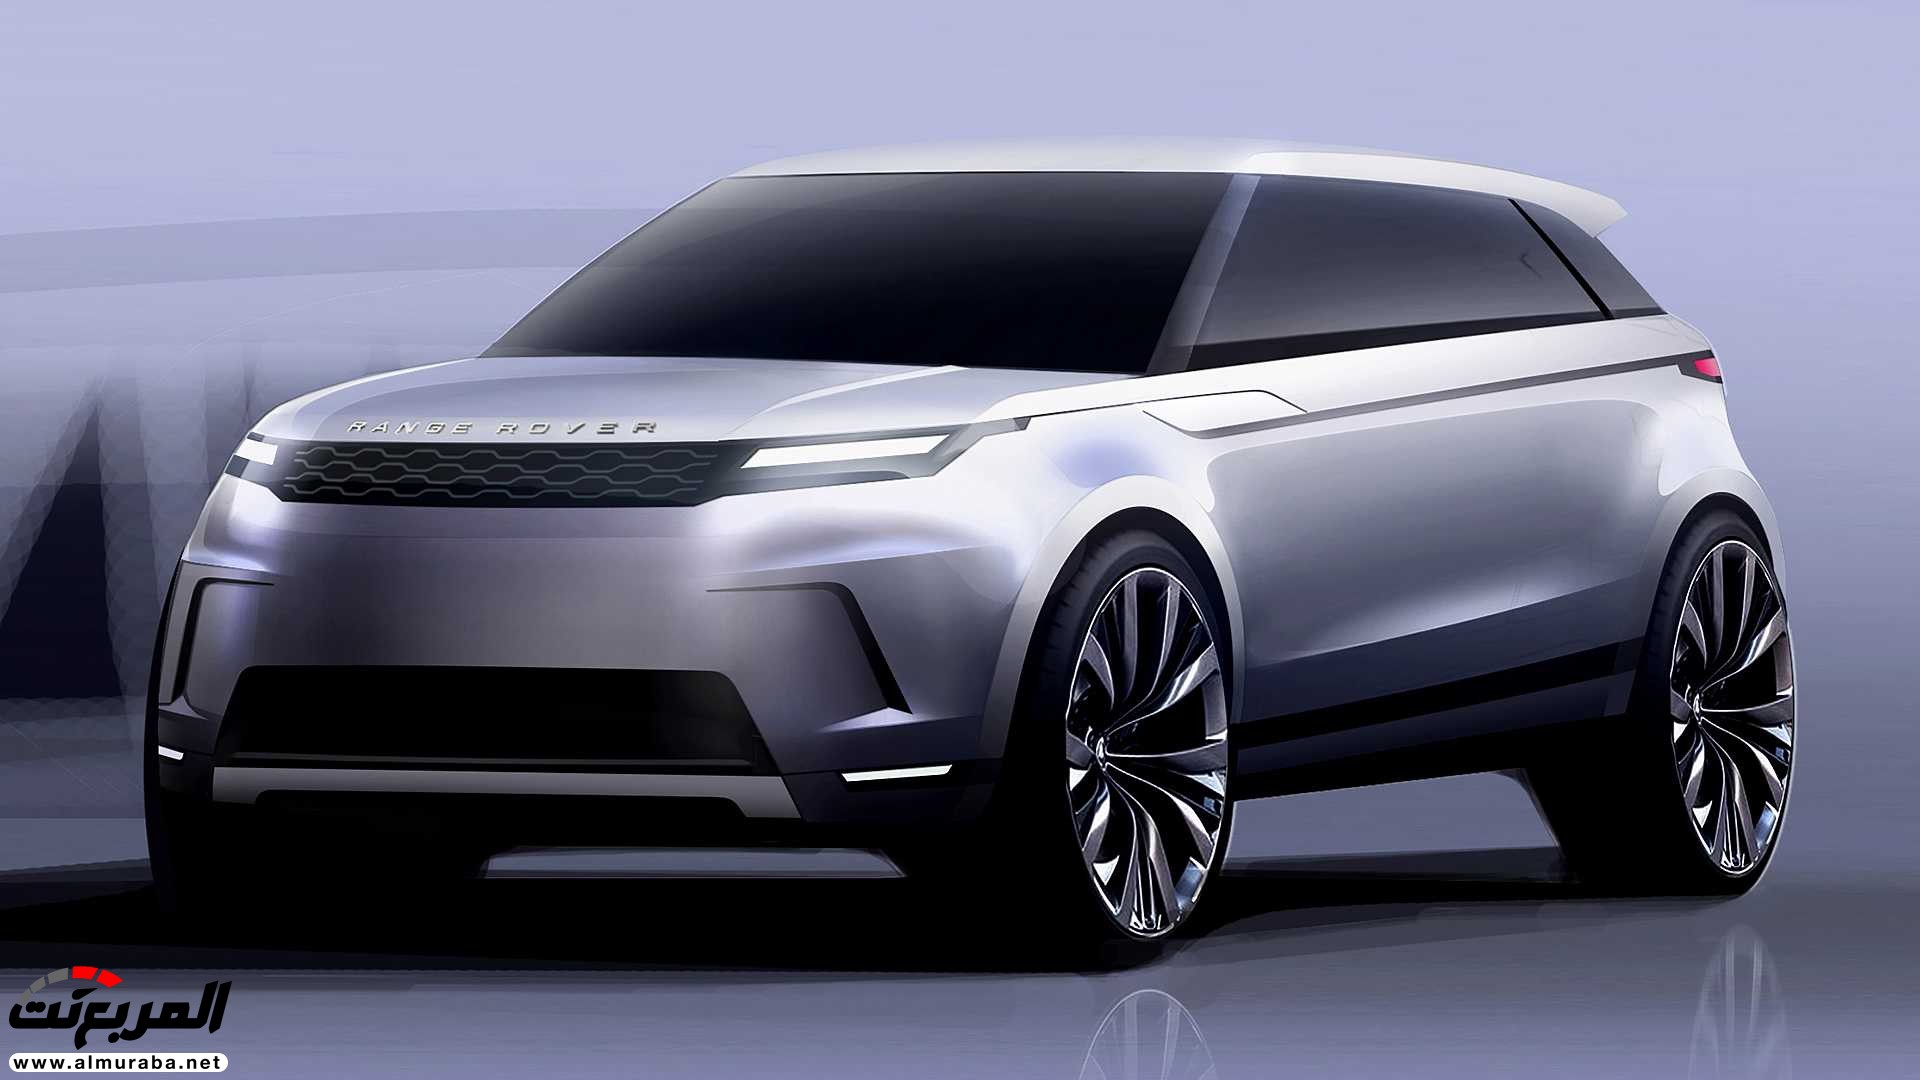 اهم 7 معلومات عن رنج روفر ايفوك 2020 الجديدة كلياً Range Rover Evoque 86